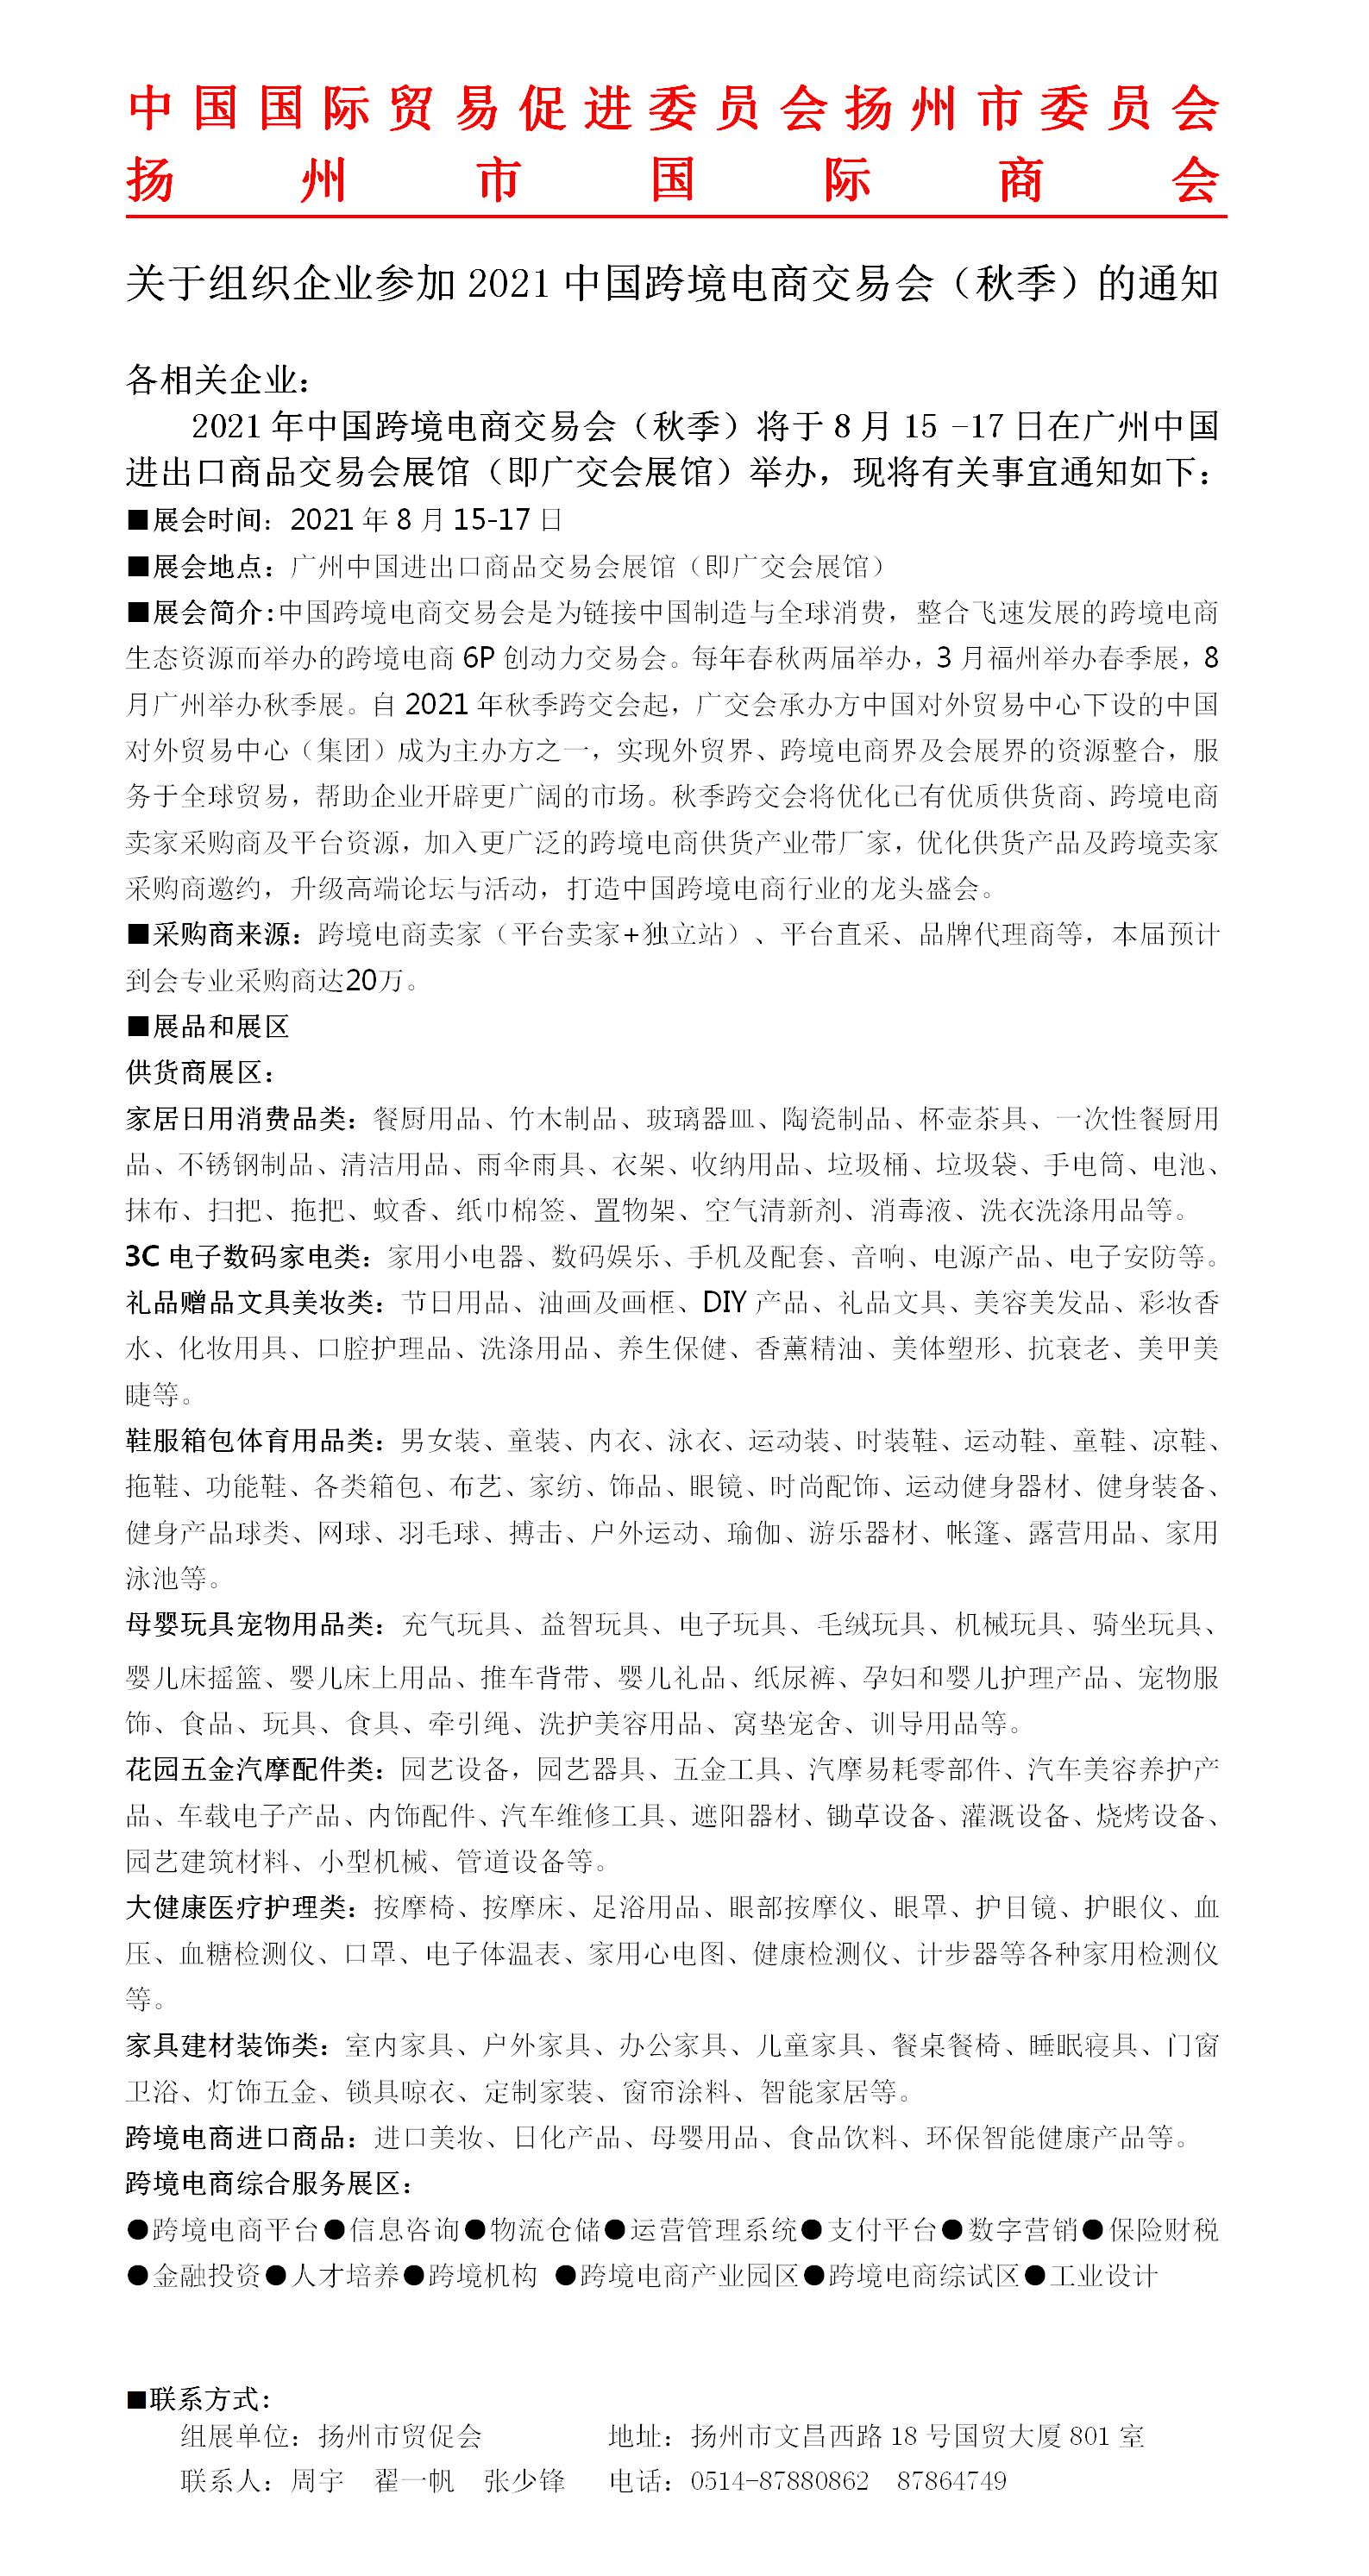 2021中国跨境电商交易会（秋季）招展通知网站_01.jpg